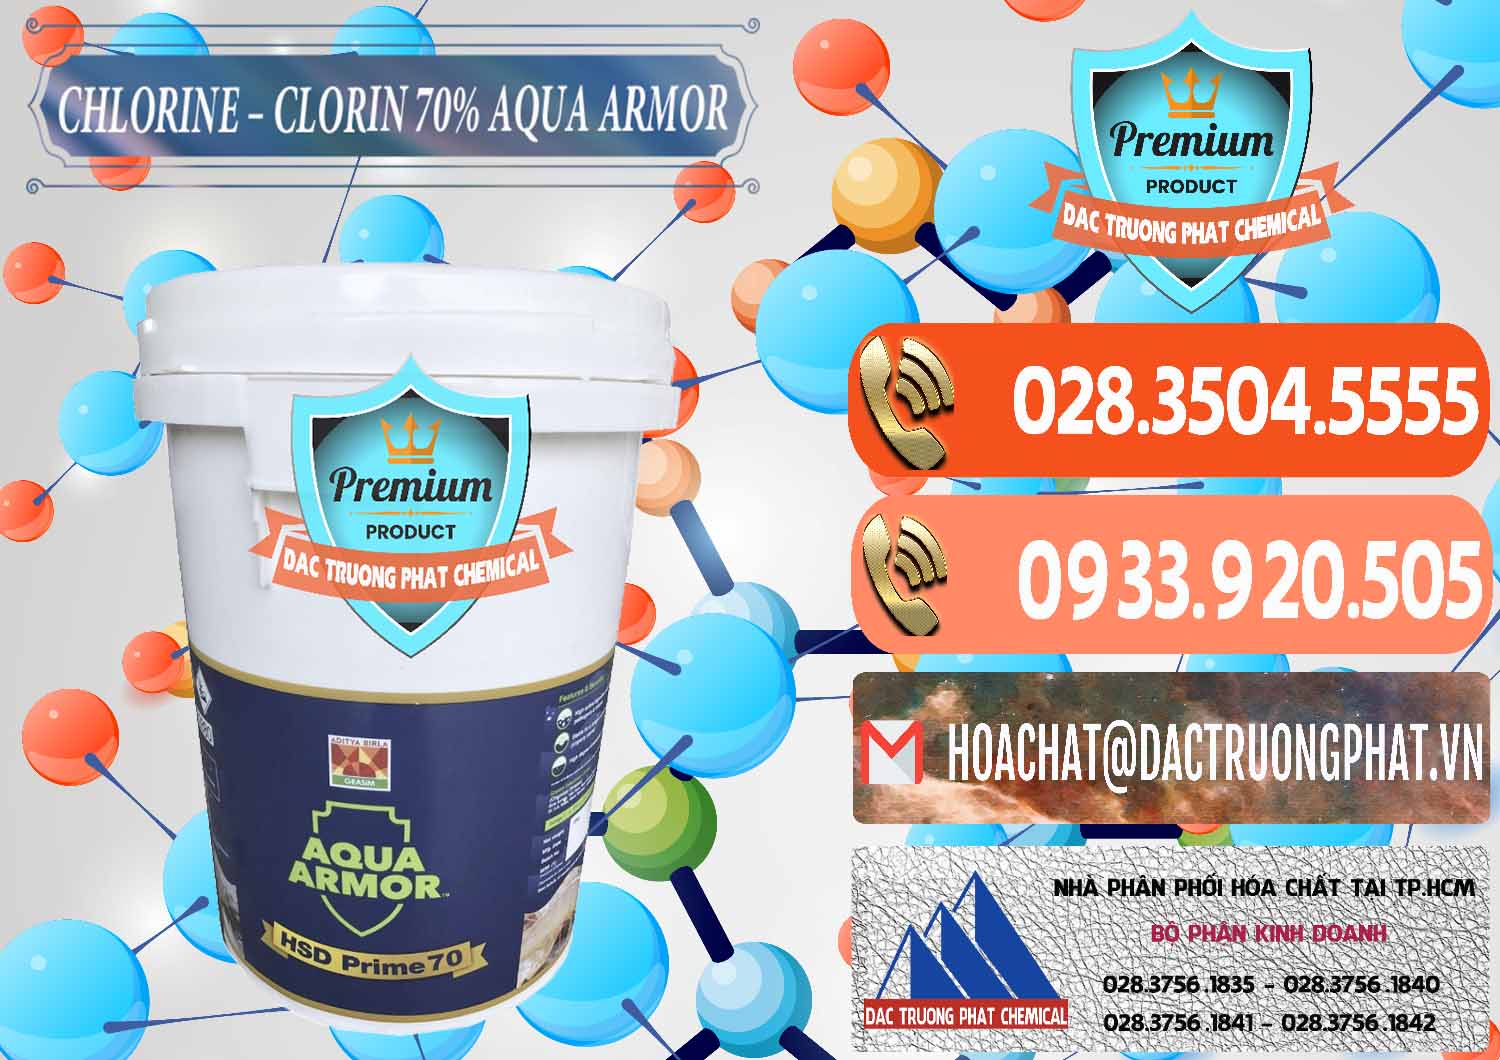 Nơi phân phối _ bán Chlorine – Clorin 70% Aqua Armor Aditya Birla Grasim Ấn Độ India - 0241 - Kinh doanh & cung cấp hóa chất tại TP.HCM - hoachatmientay.com